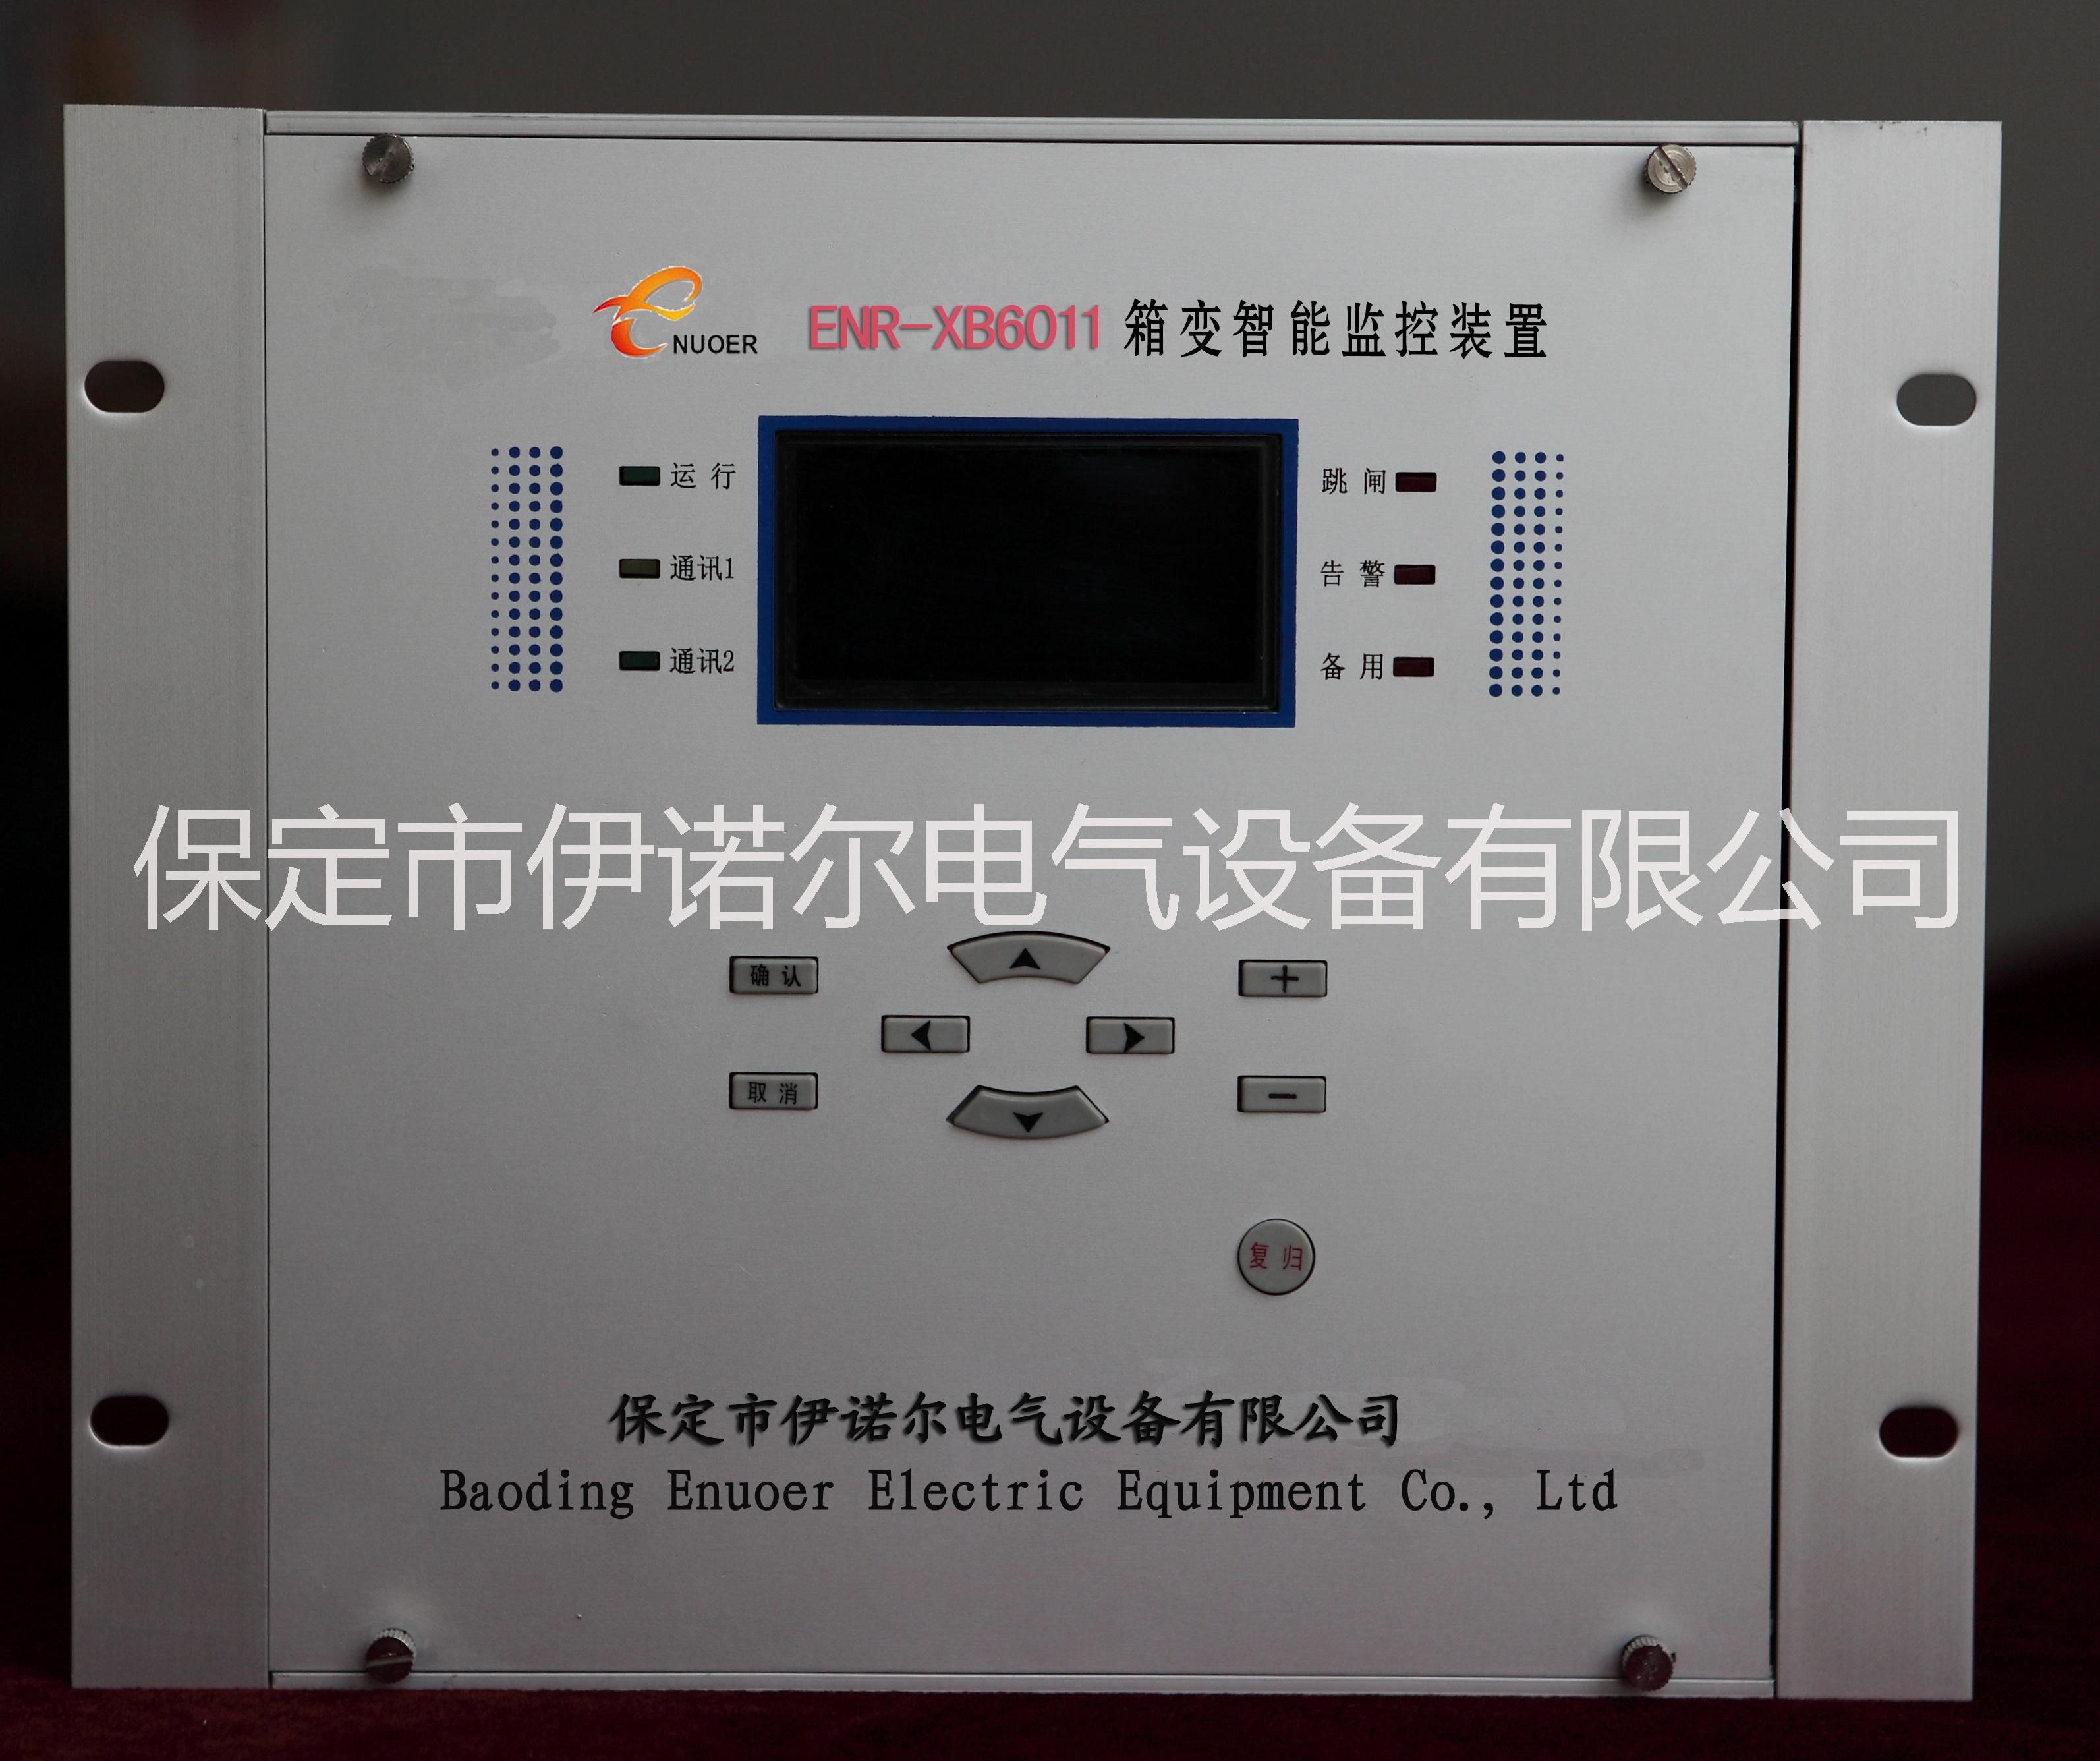 供应ENR-XH6011箱变智能测控/综保装置保定伊诺尔专业生产